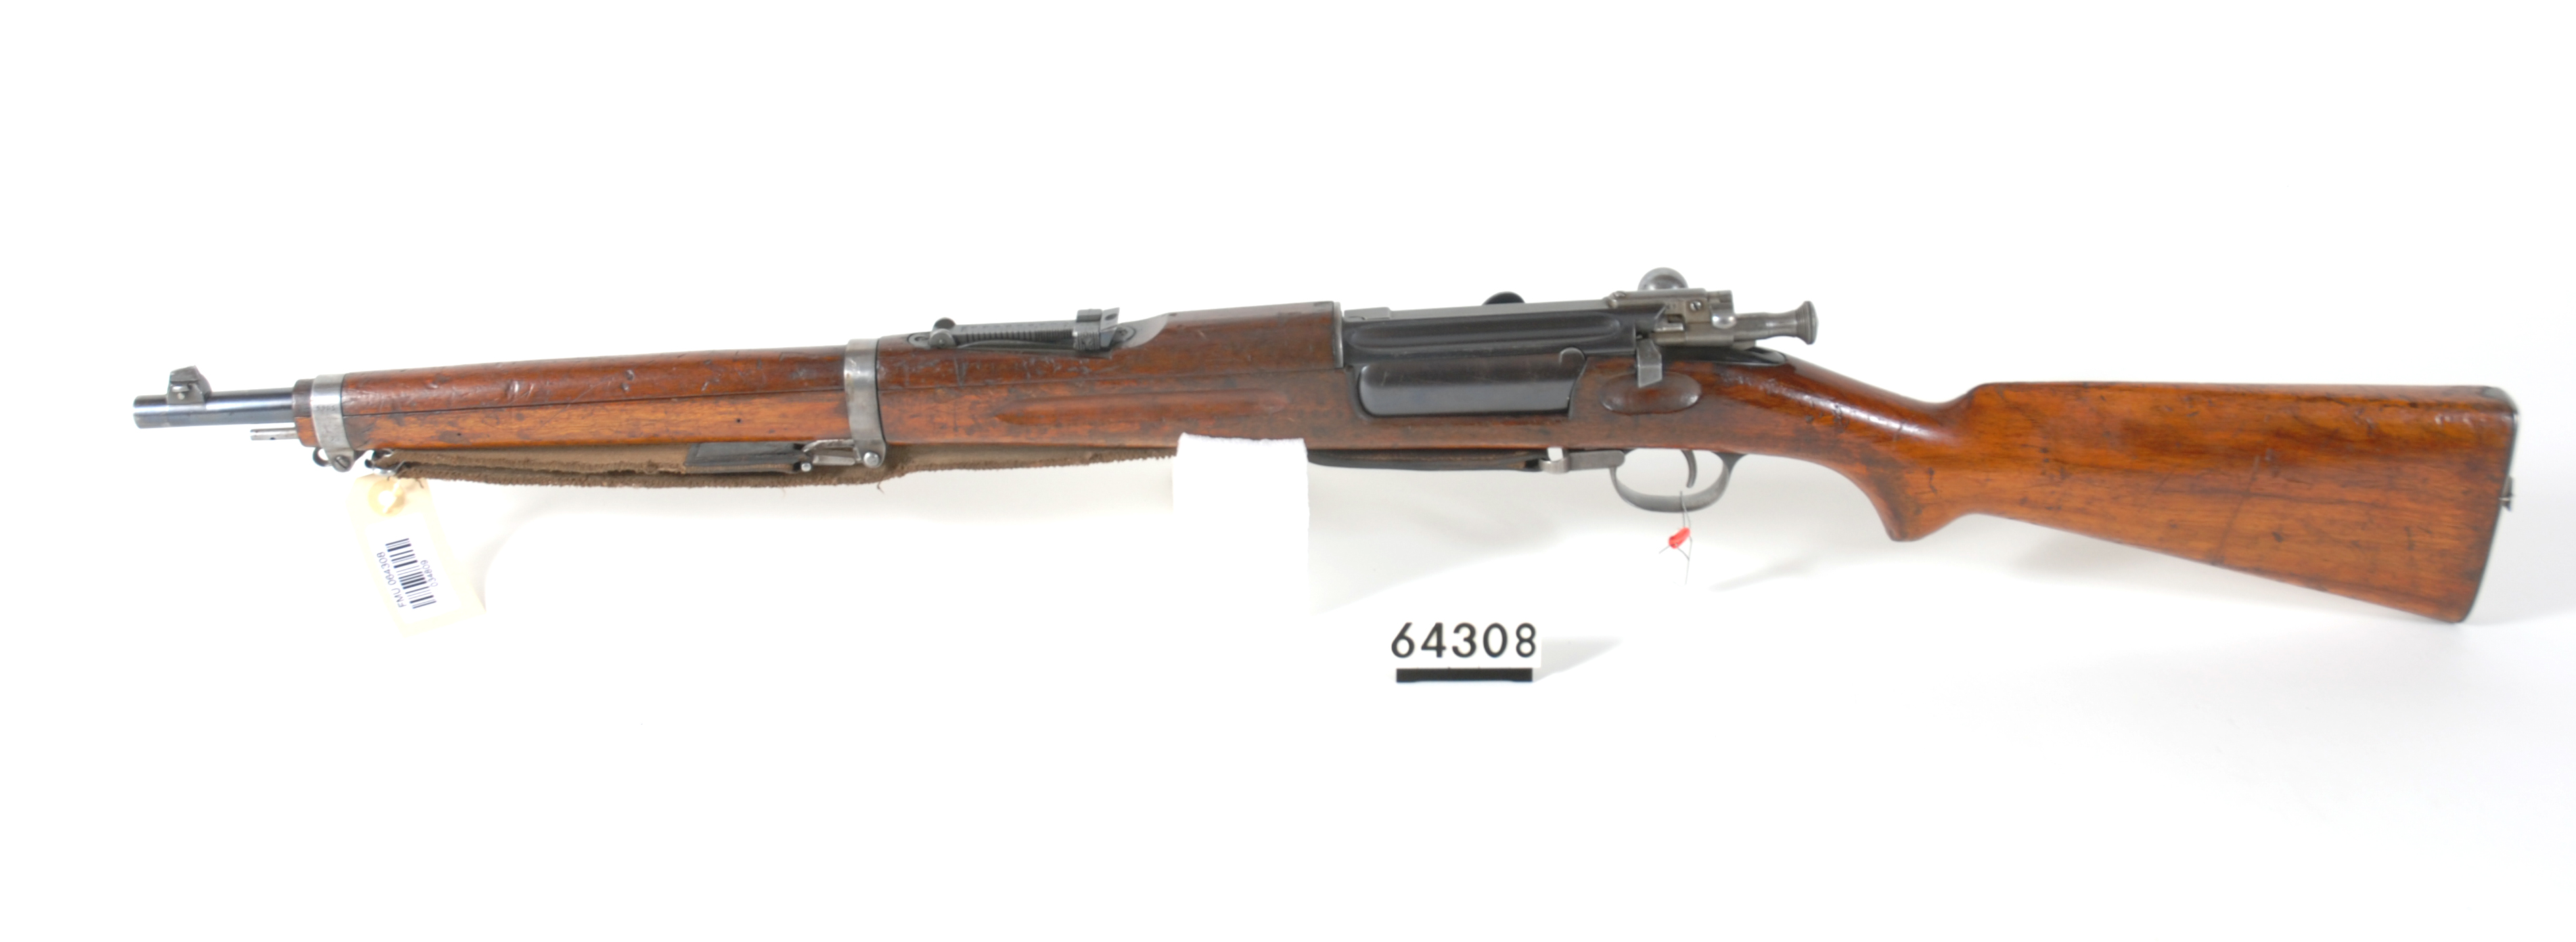 ./guns/rifle/bilder/Rifle-Kongsberg-Krag-M1904-FMU.064308b.jpg